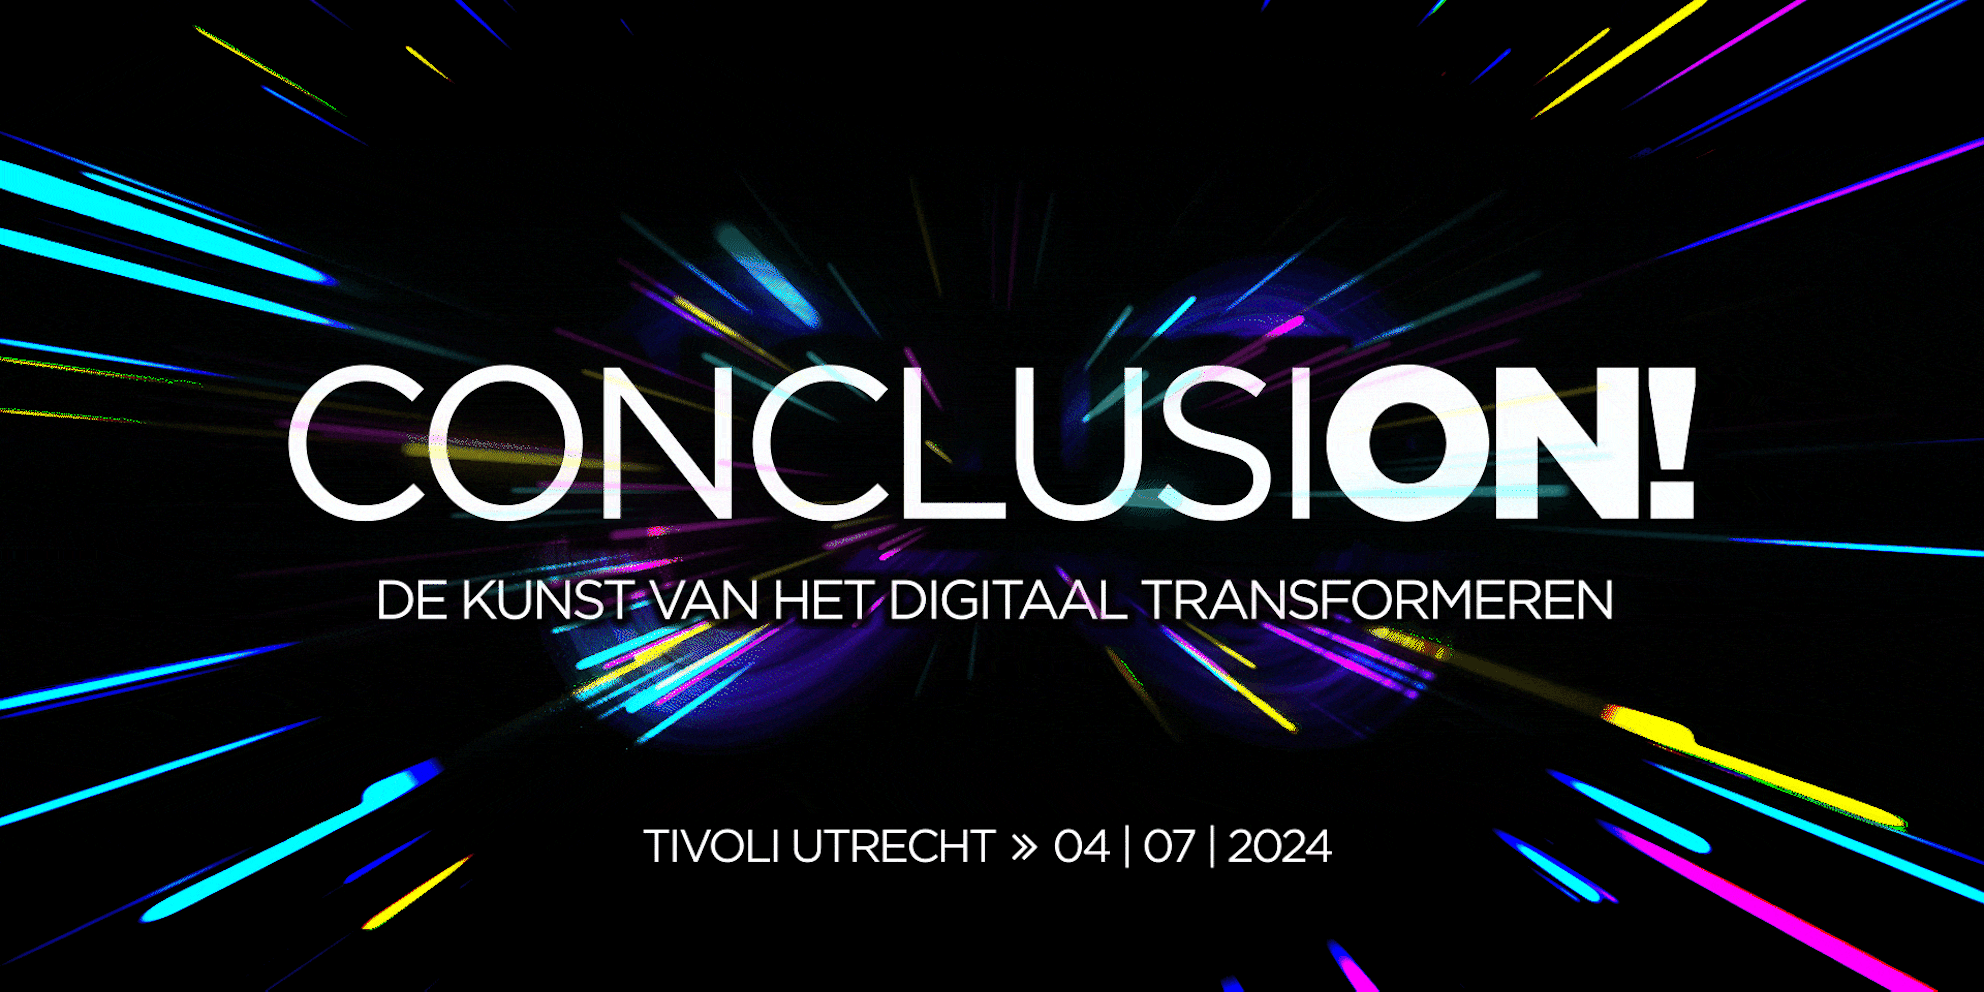 ConclusiON! – De kunst van het digitaal transformeren event op 4 juli 2024 in Tivolivredenburg